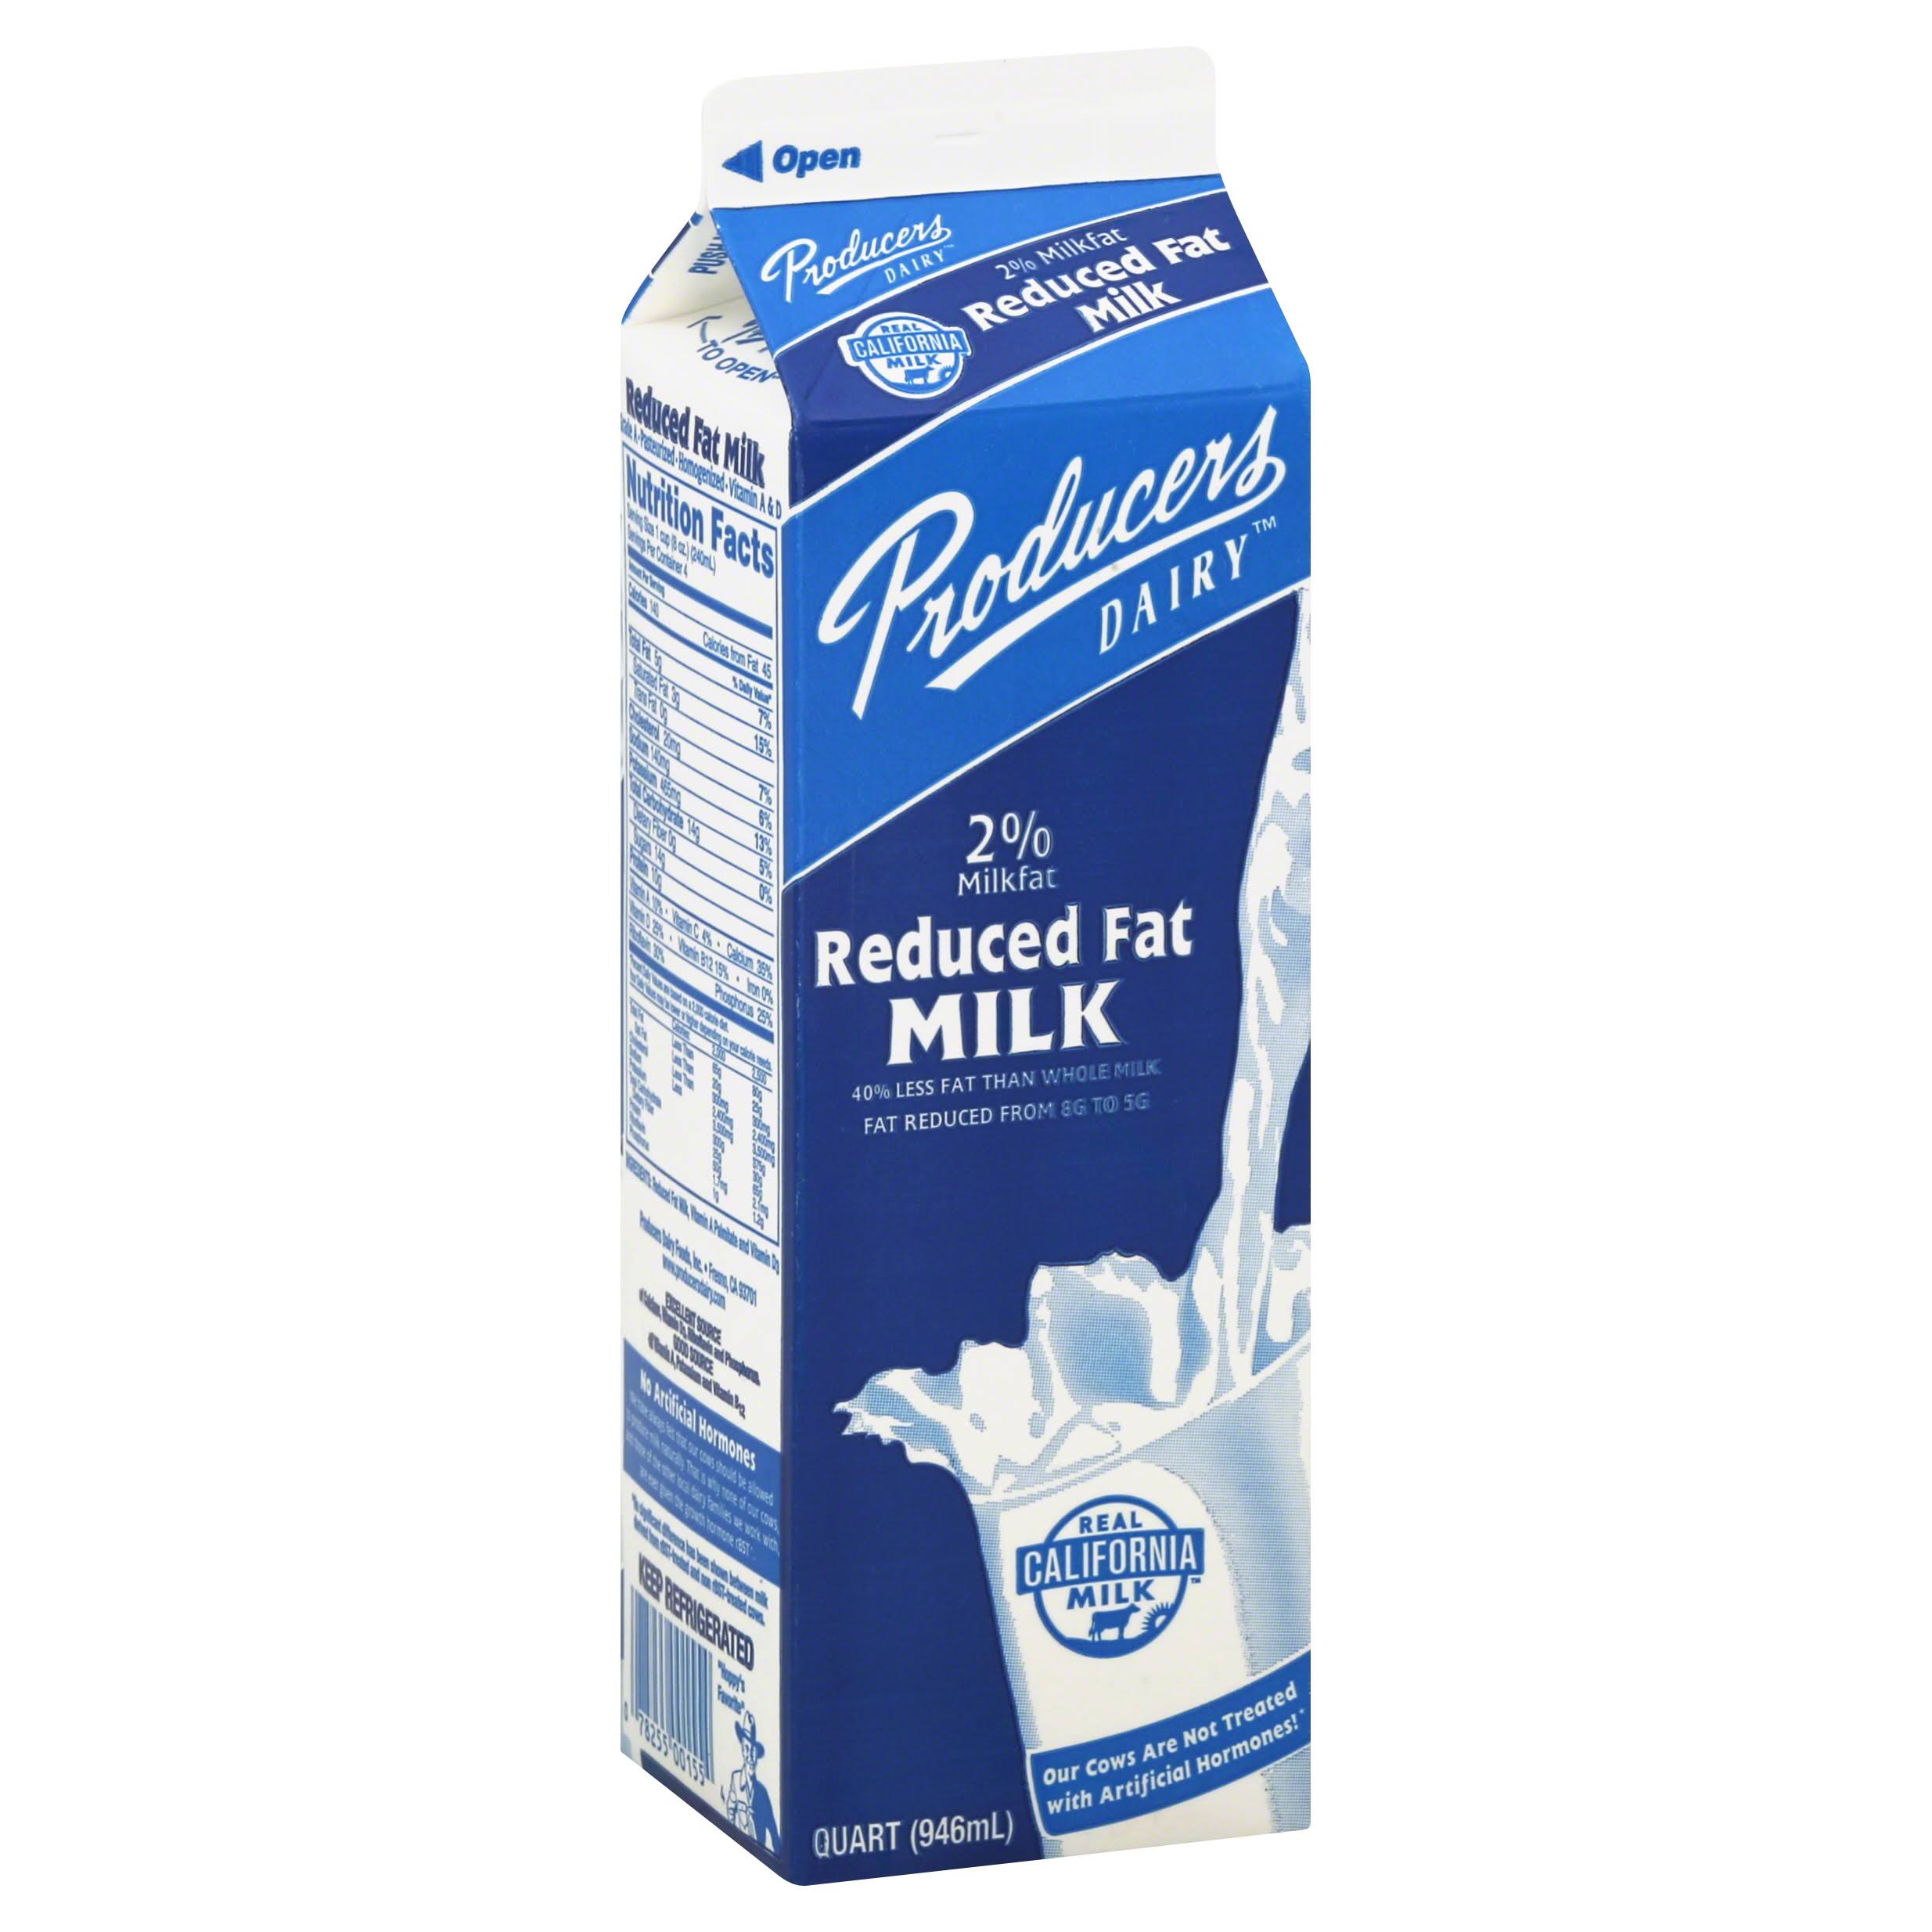 Producers Milk, Reduced Fat, 2% Milkfat - 1 qt